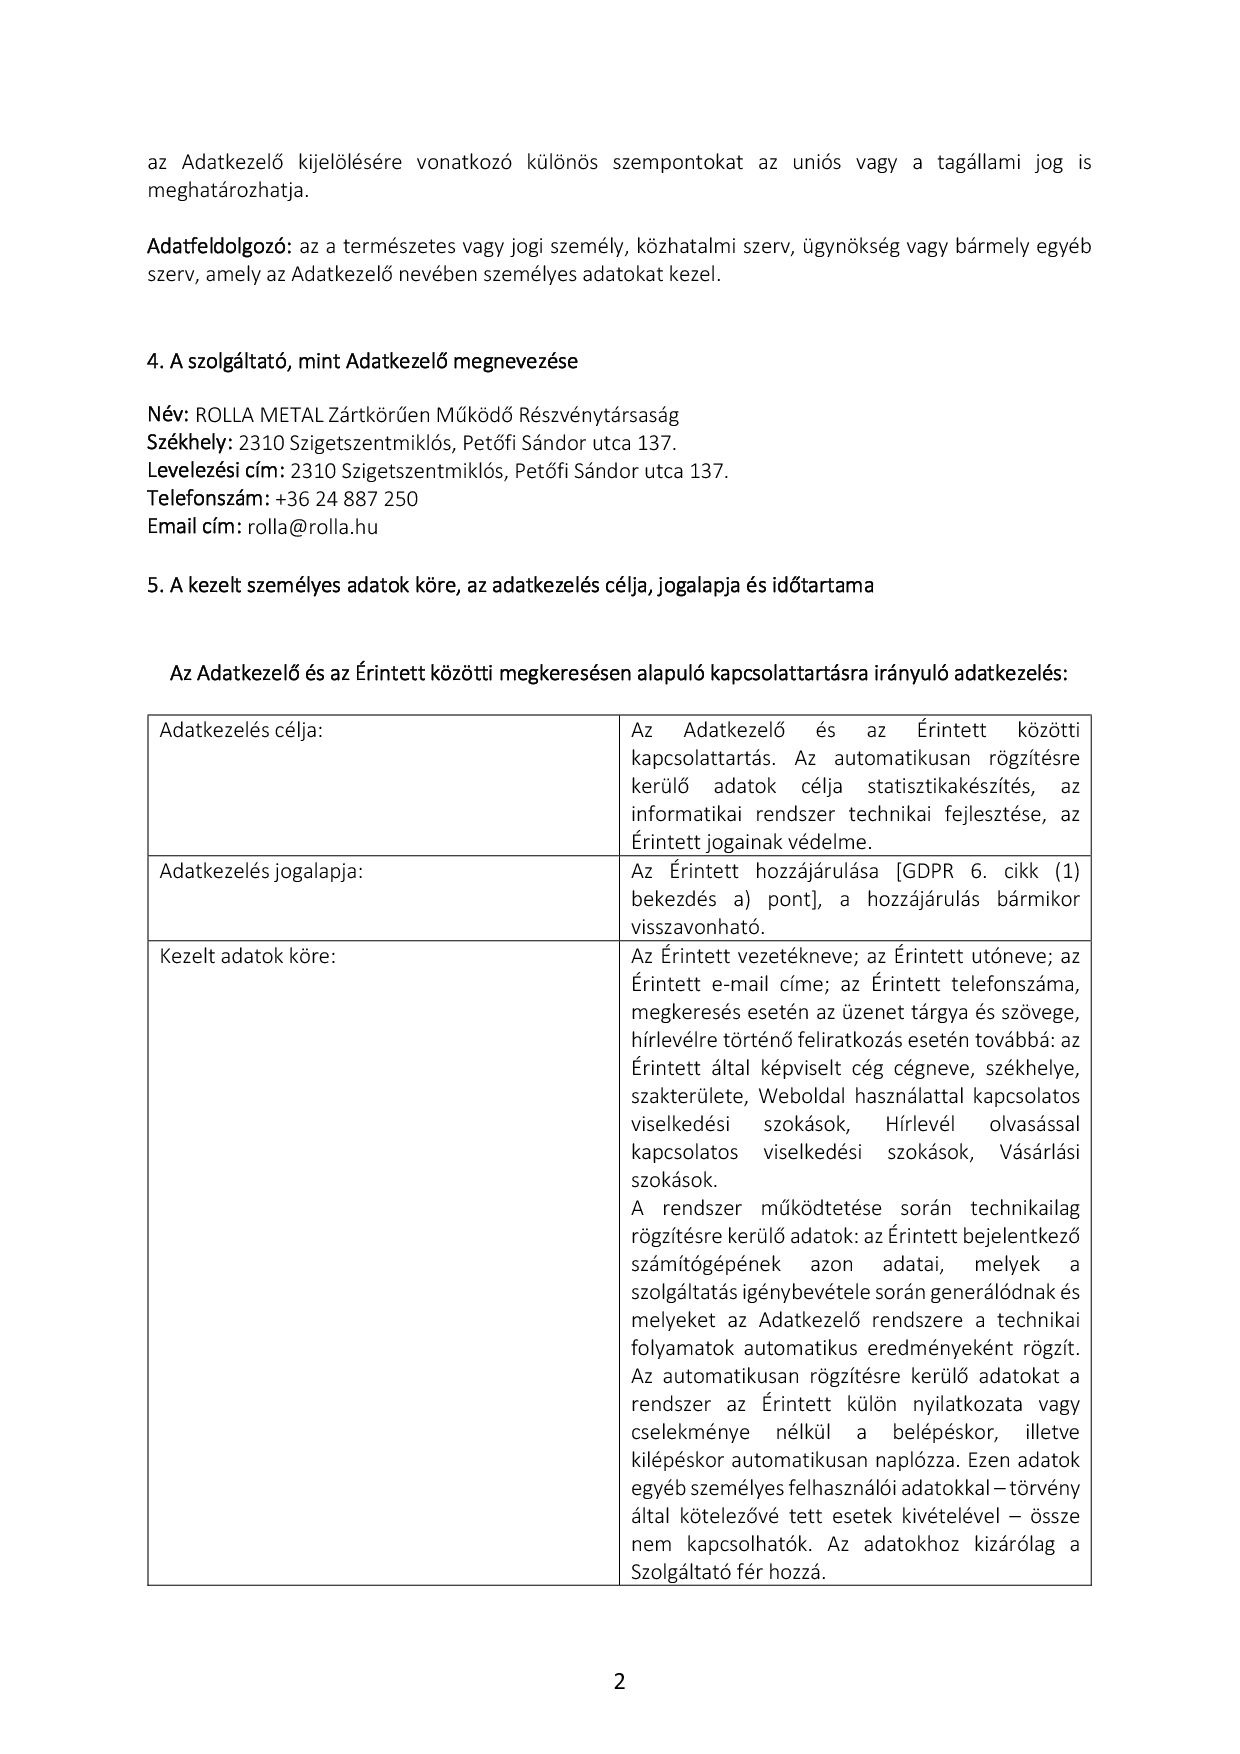 Rolla Metal Zrt. - Adatvédelmi és adatkezelési szabályzat (1. oldal)